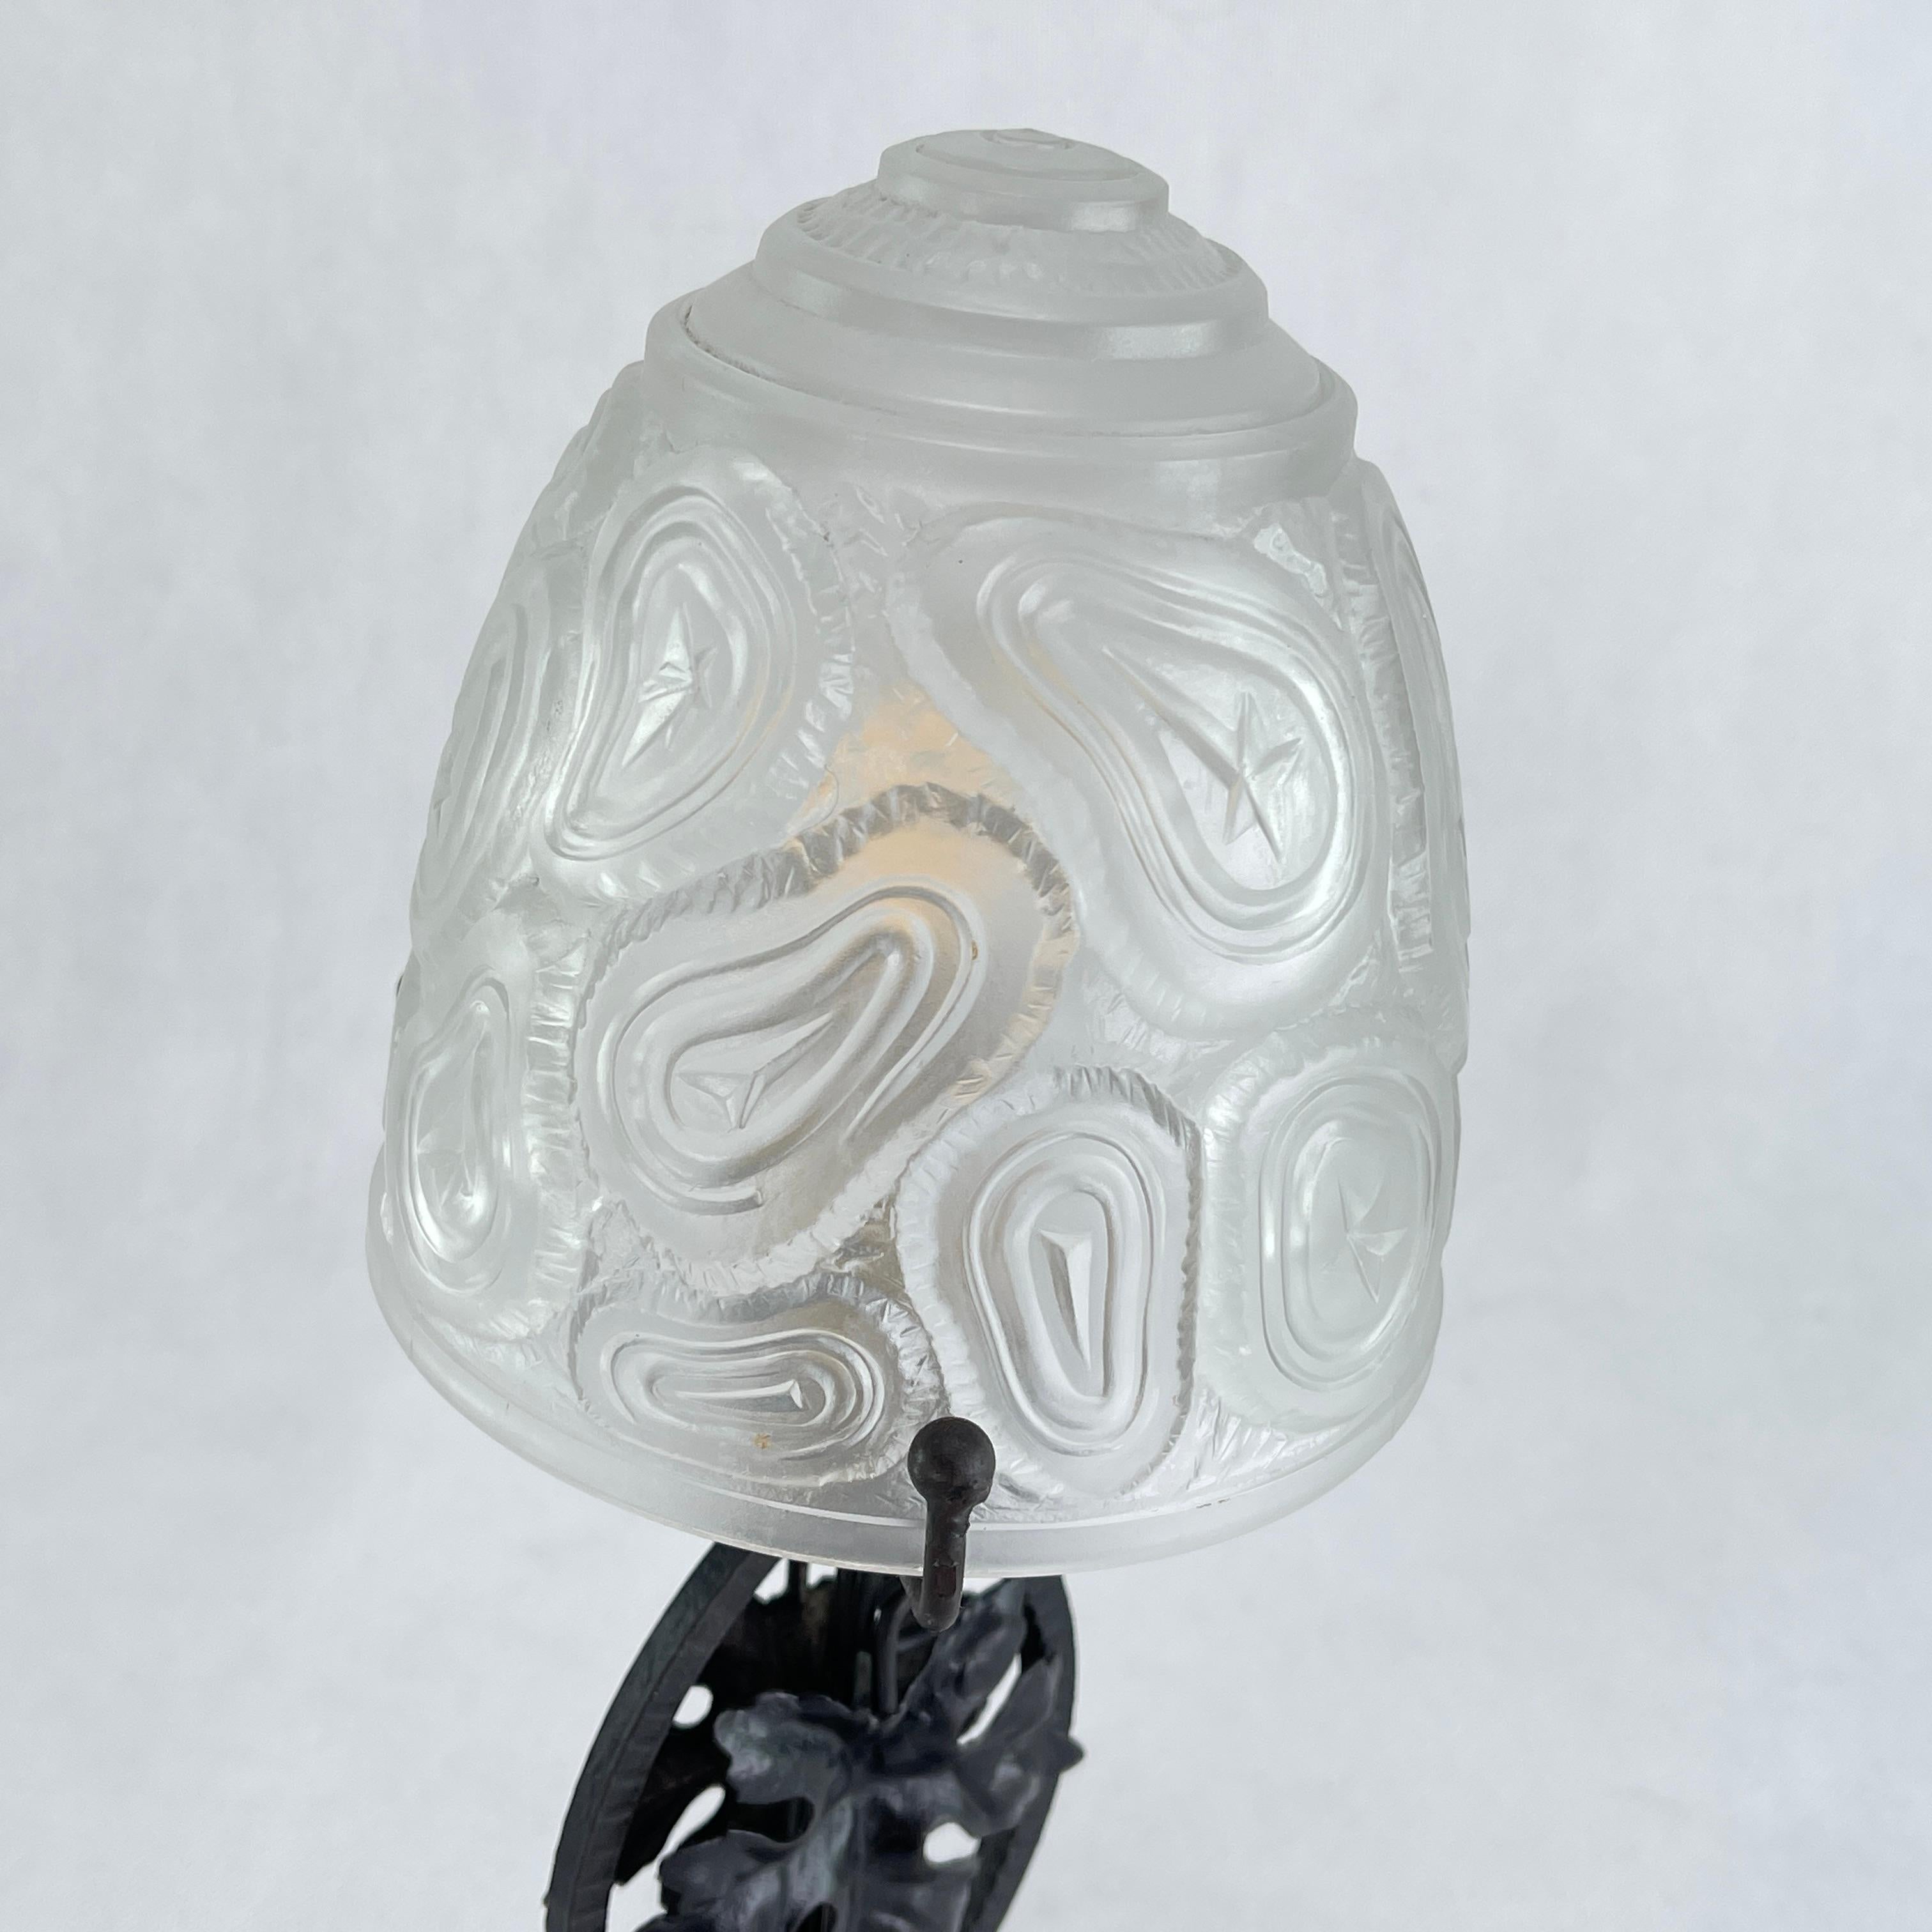 Lampe de table Art Déco - années 1930

Magnifique lampe de table Art Déco des années 1930. La lampe a une base en métal noir et un abat-jour en verre pressé. Cette lampe de table est un classique absolu du design de la période ART DECOS.

L'article